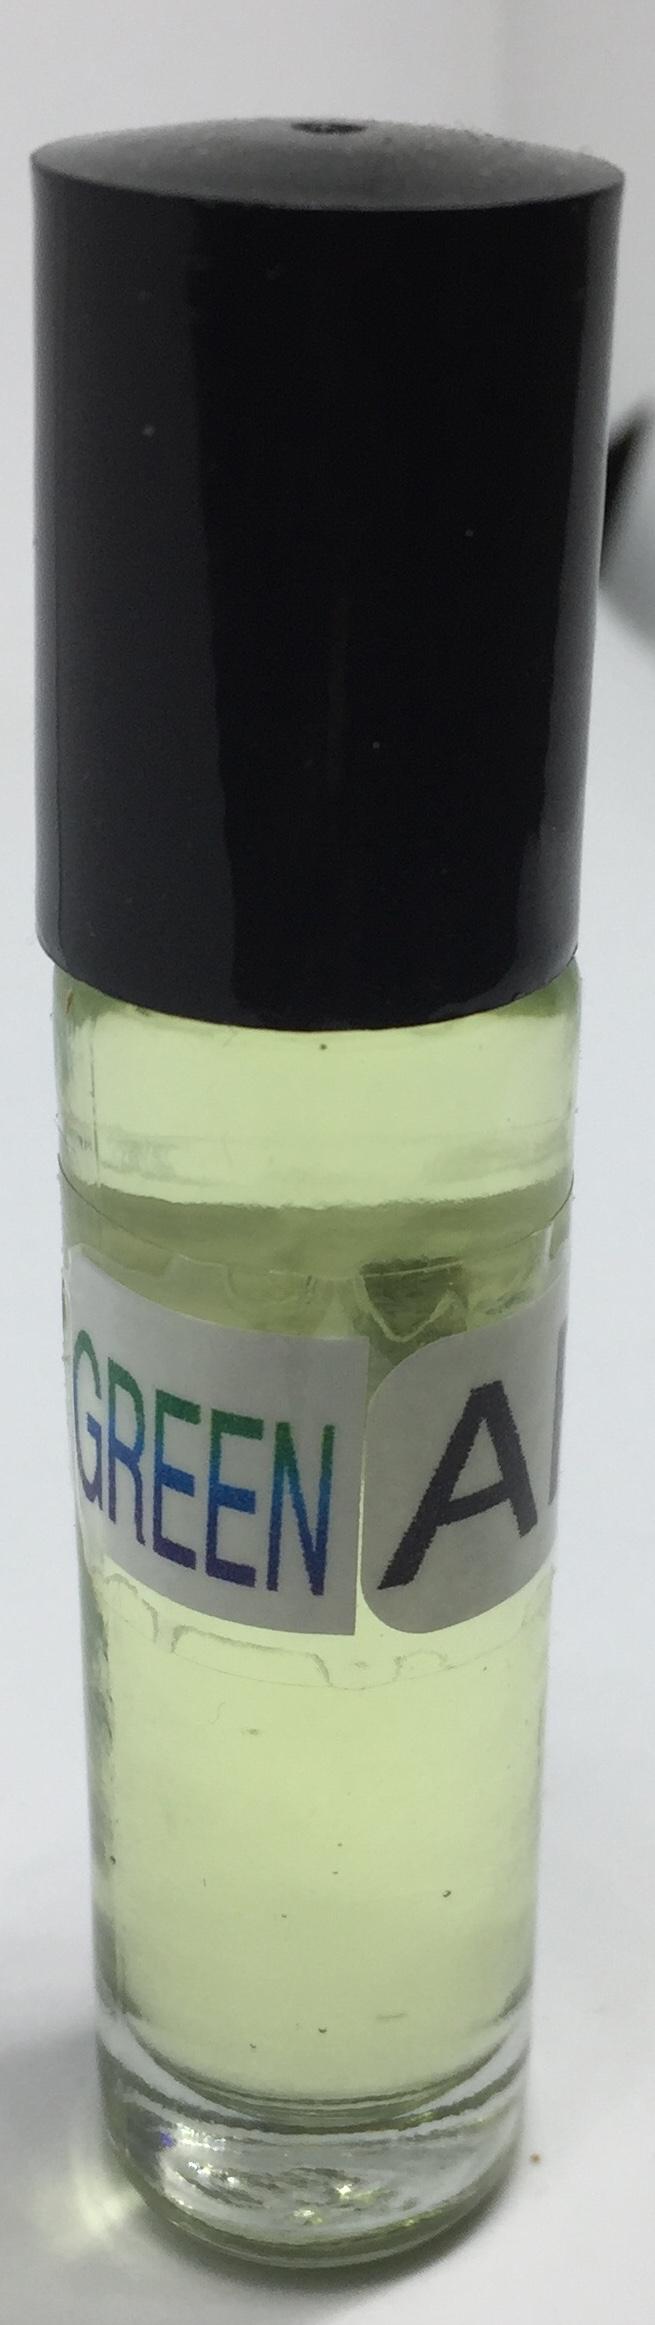 Green Apple: Fragrance(Perfume)Body Oil Unisex